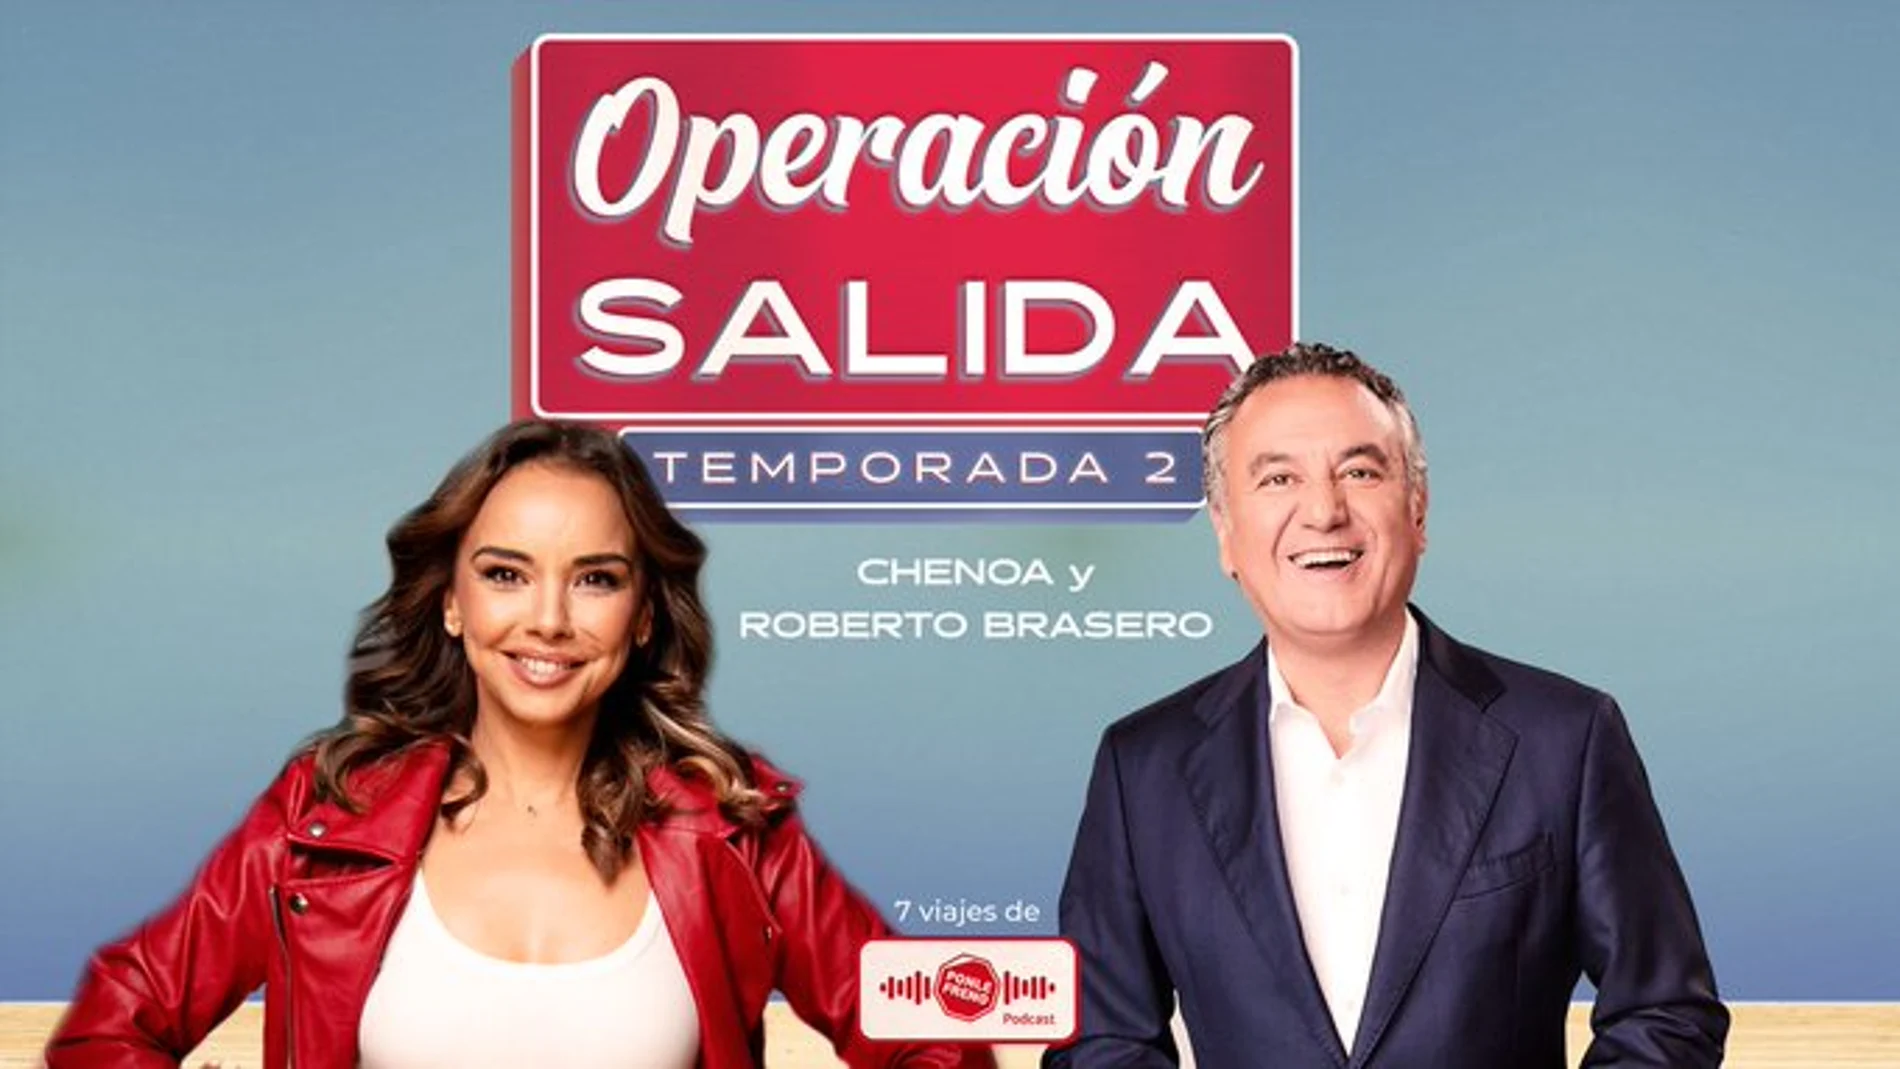 La cantante Chenoa y Roberto Brasero protagonizan un episodio de 'Operación Salida'.